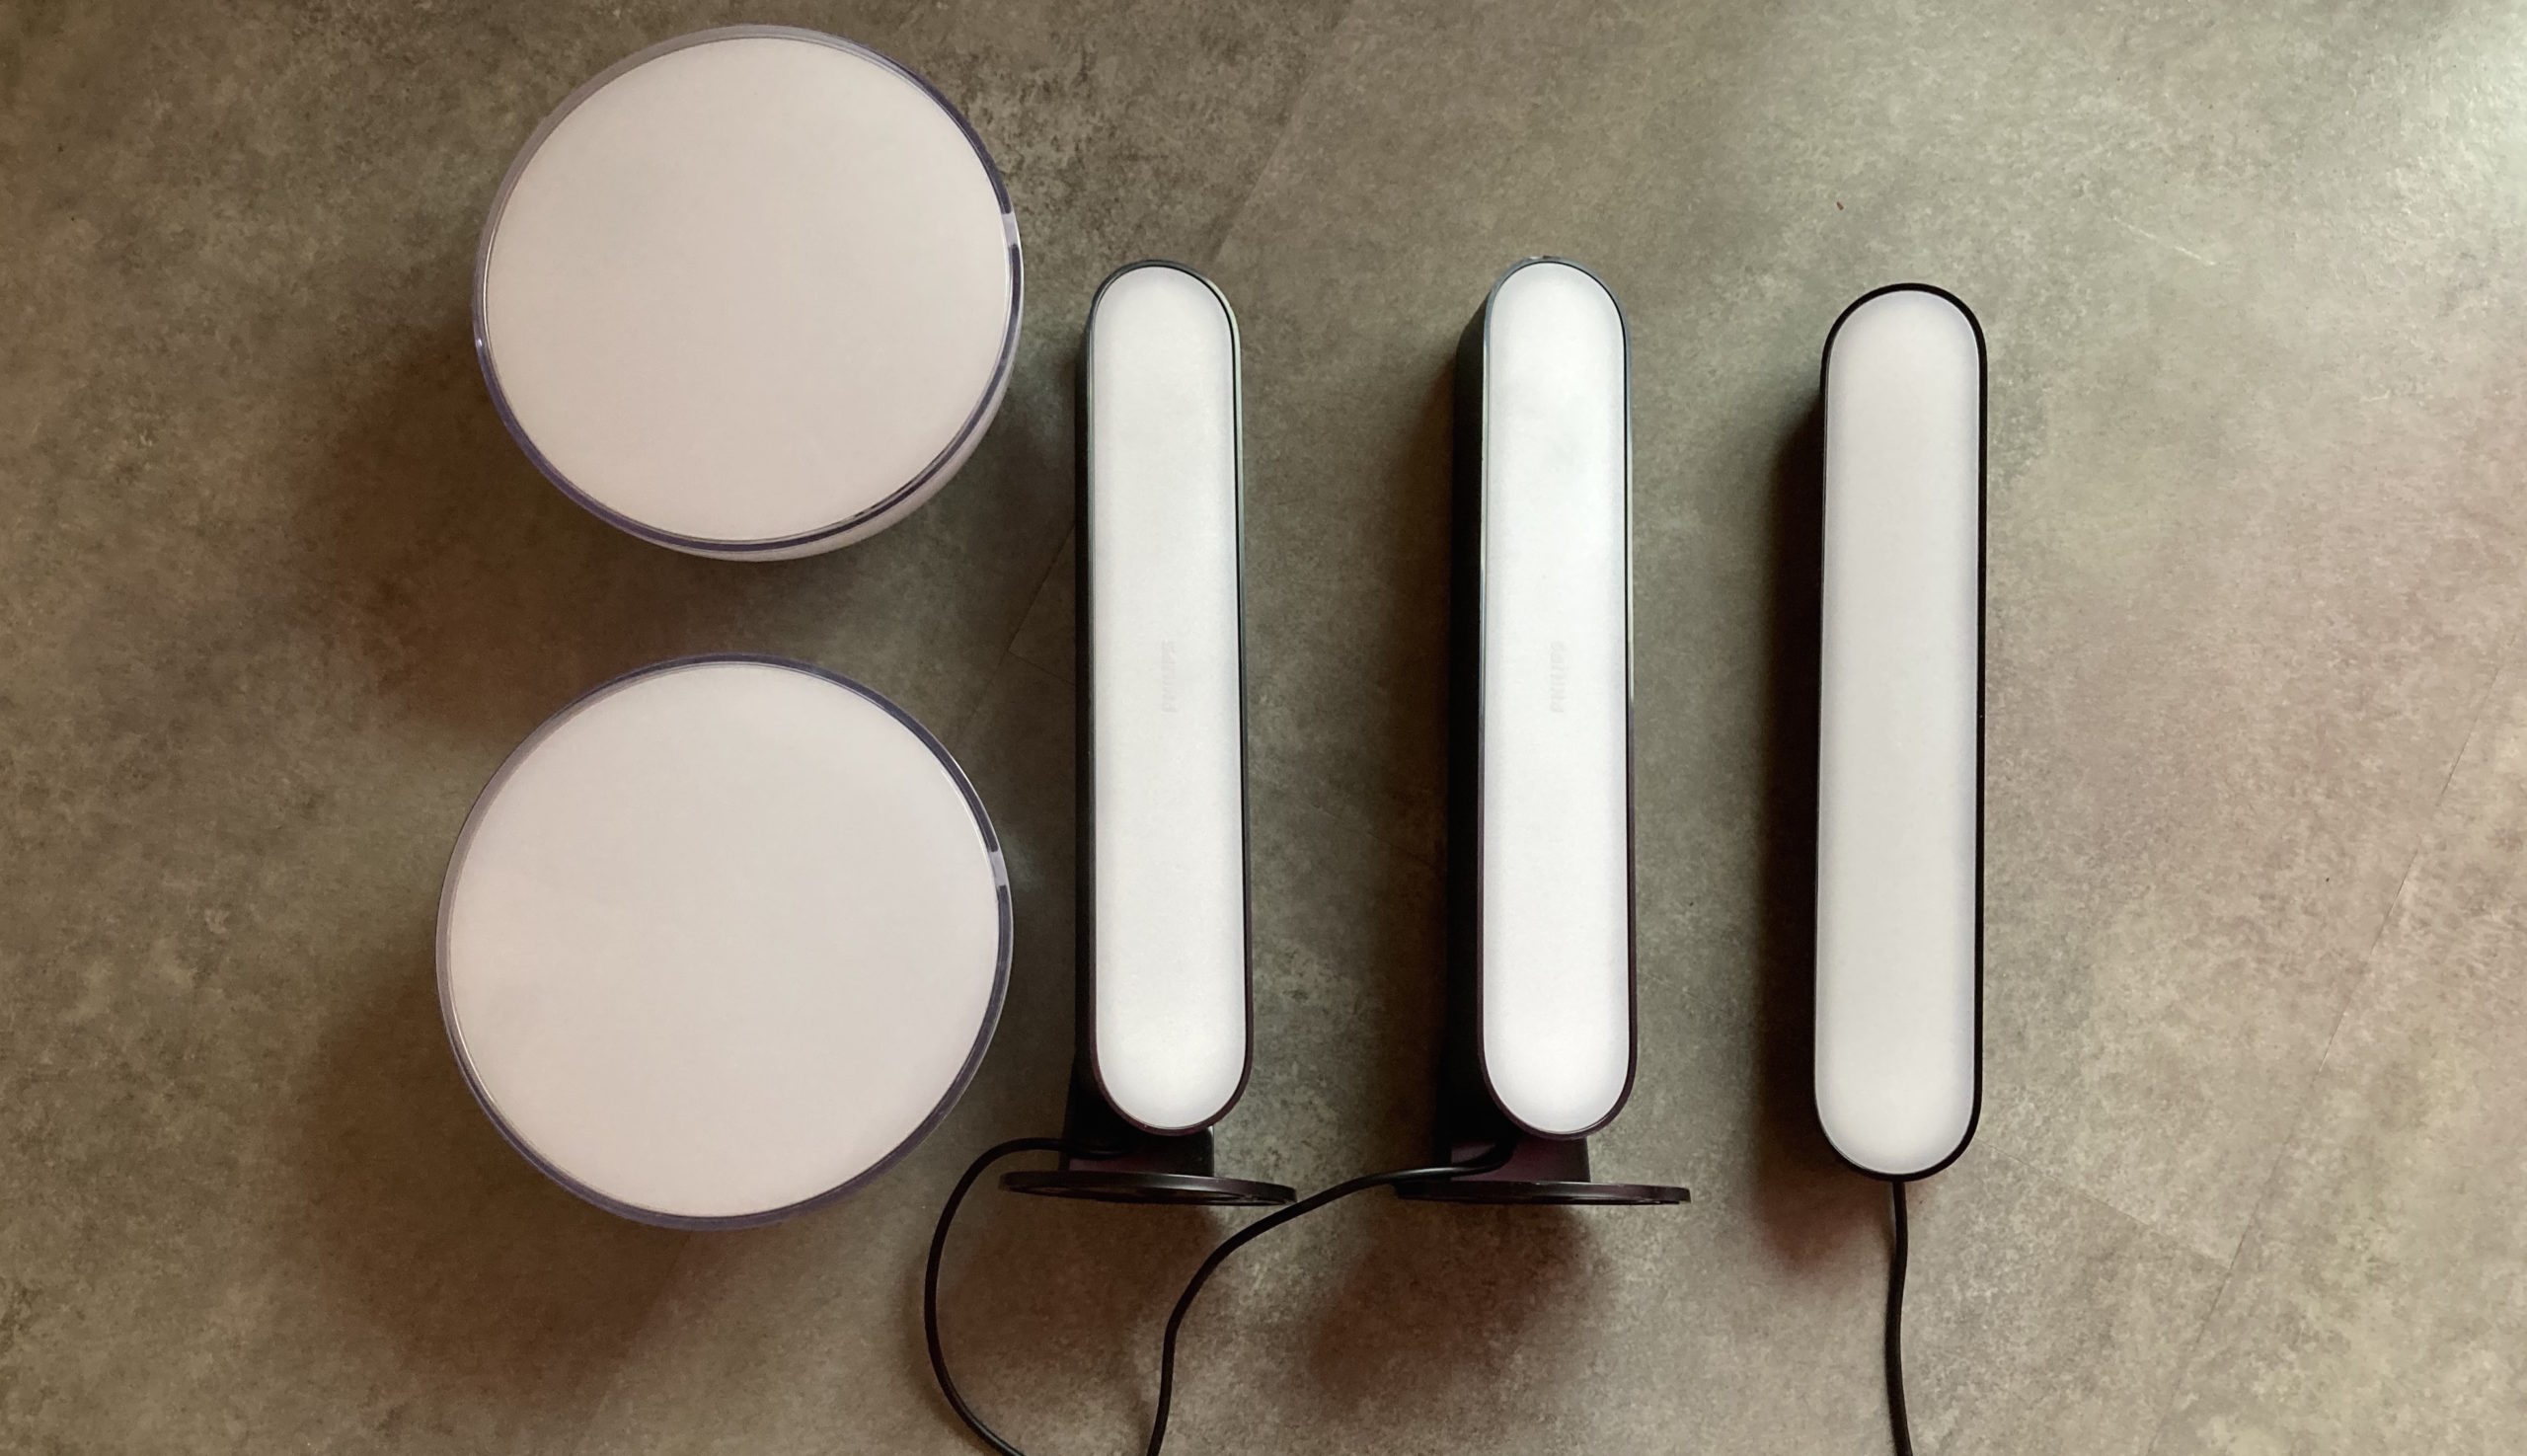 🔥 Bon plan : plusieurs packs complets Google Home, avec ampoules Philips  Hue et Chromecast 2